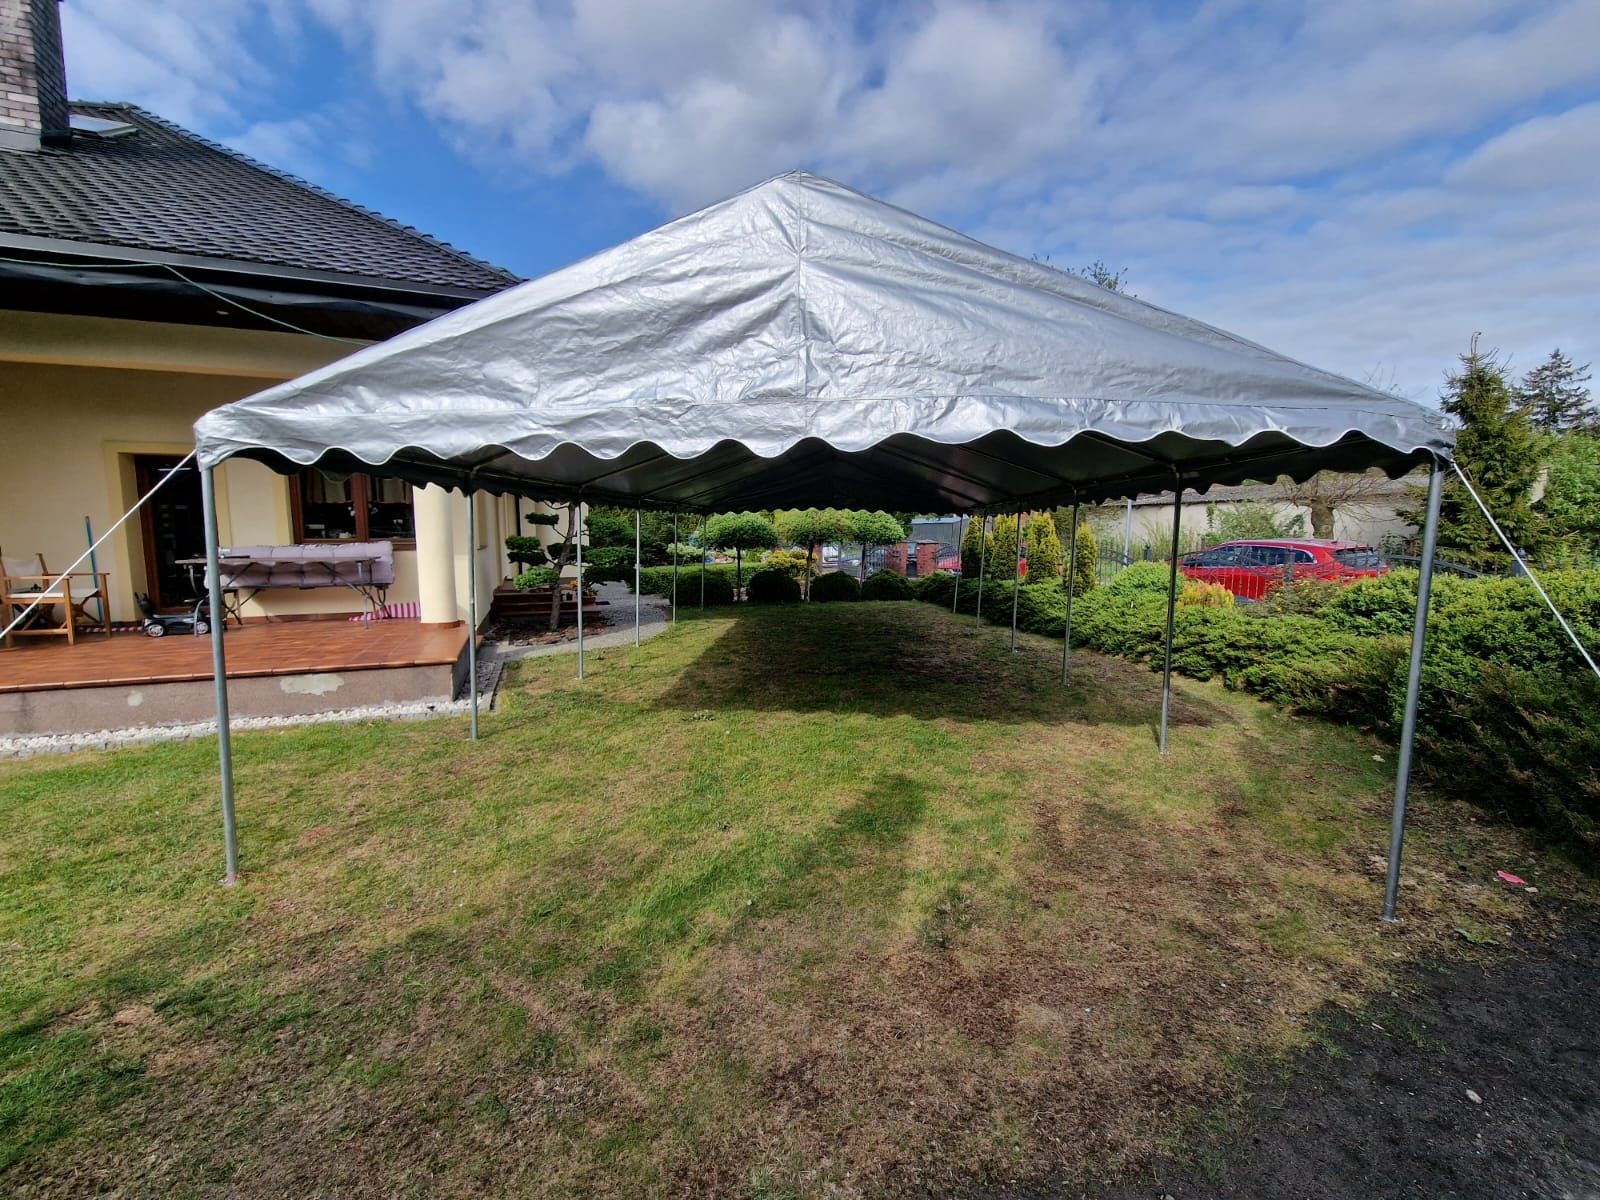 Namiot imprezowy 5m x 10m (Kołobrzeg, Trzebiatów, Koszalin, Świdwin)